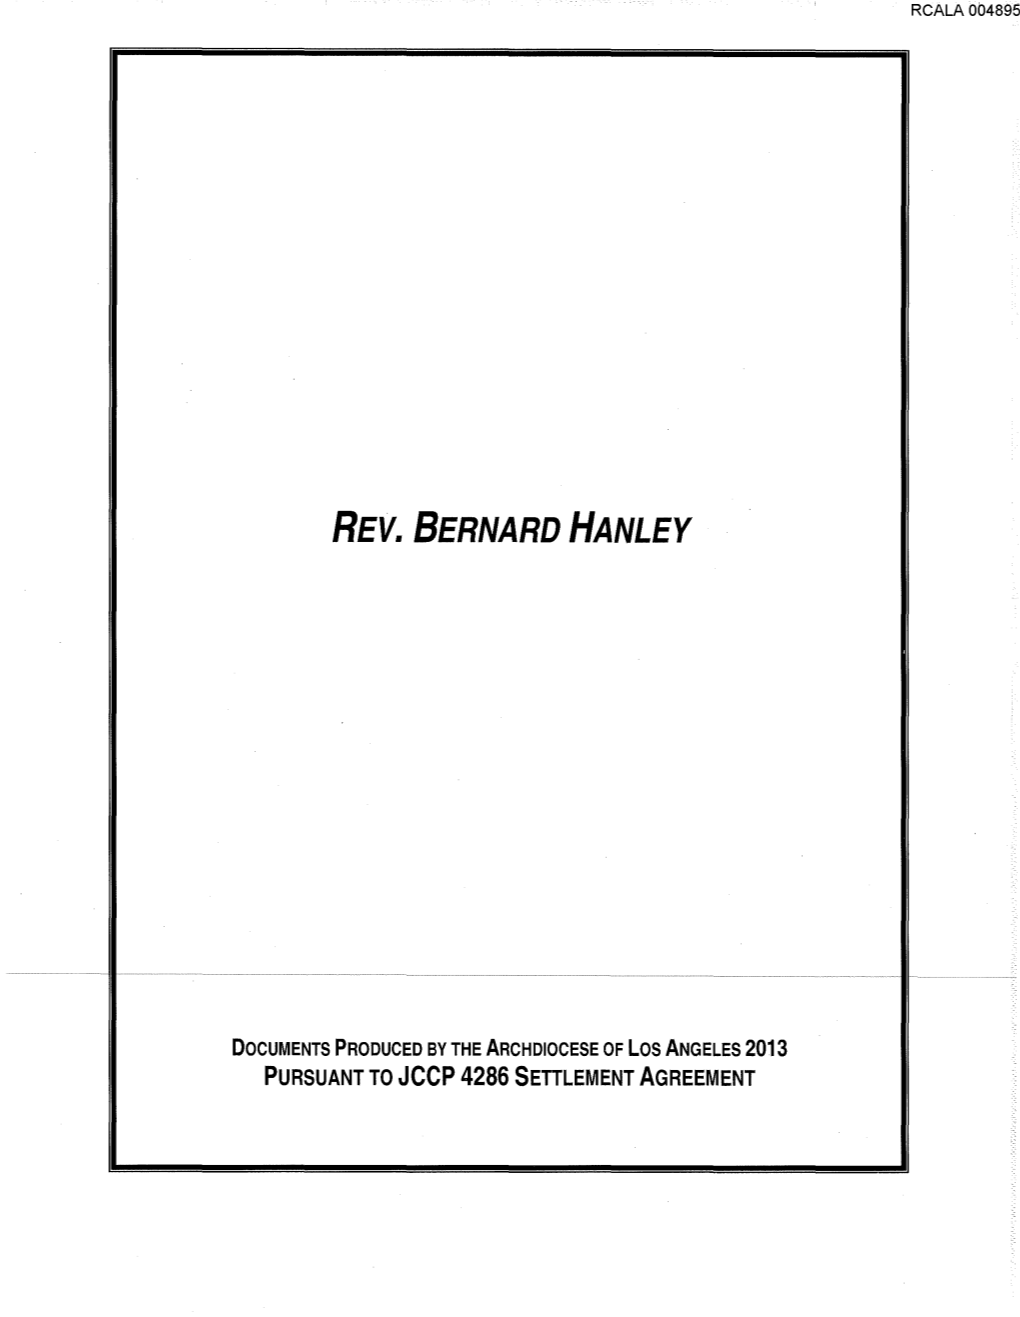 Rev. Bernard Hanley